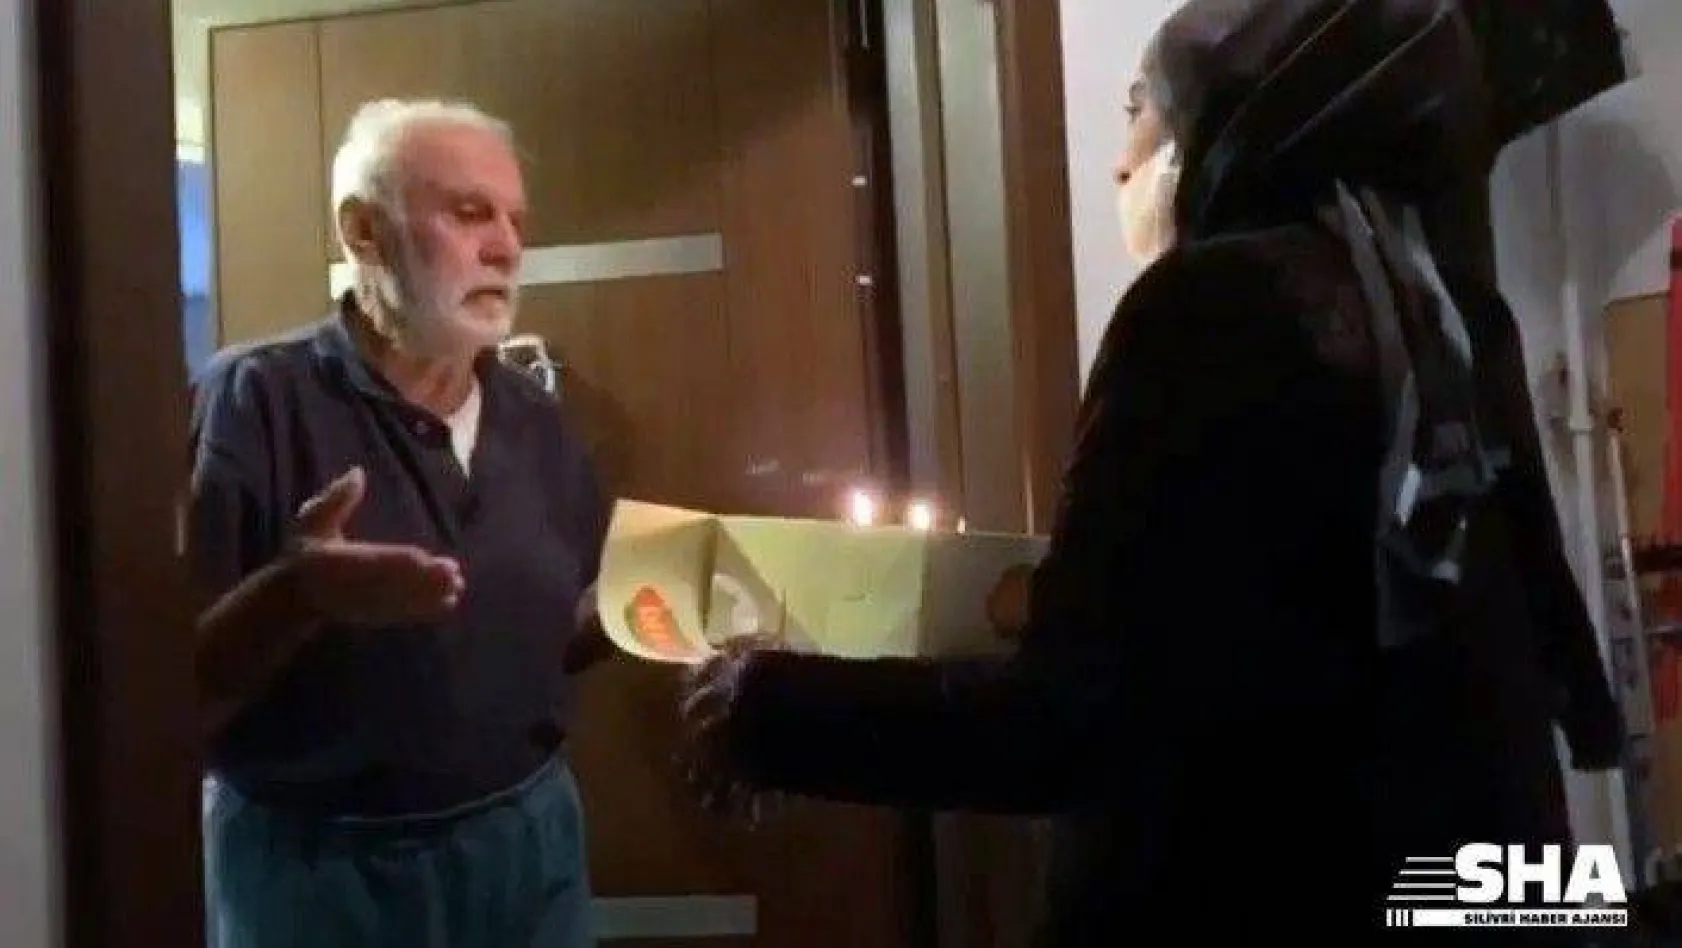 Korona virüs tedbirleri nedeniyle evden çıkamayan yaşlı adama sürpriz doğum günü kutlaması